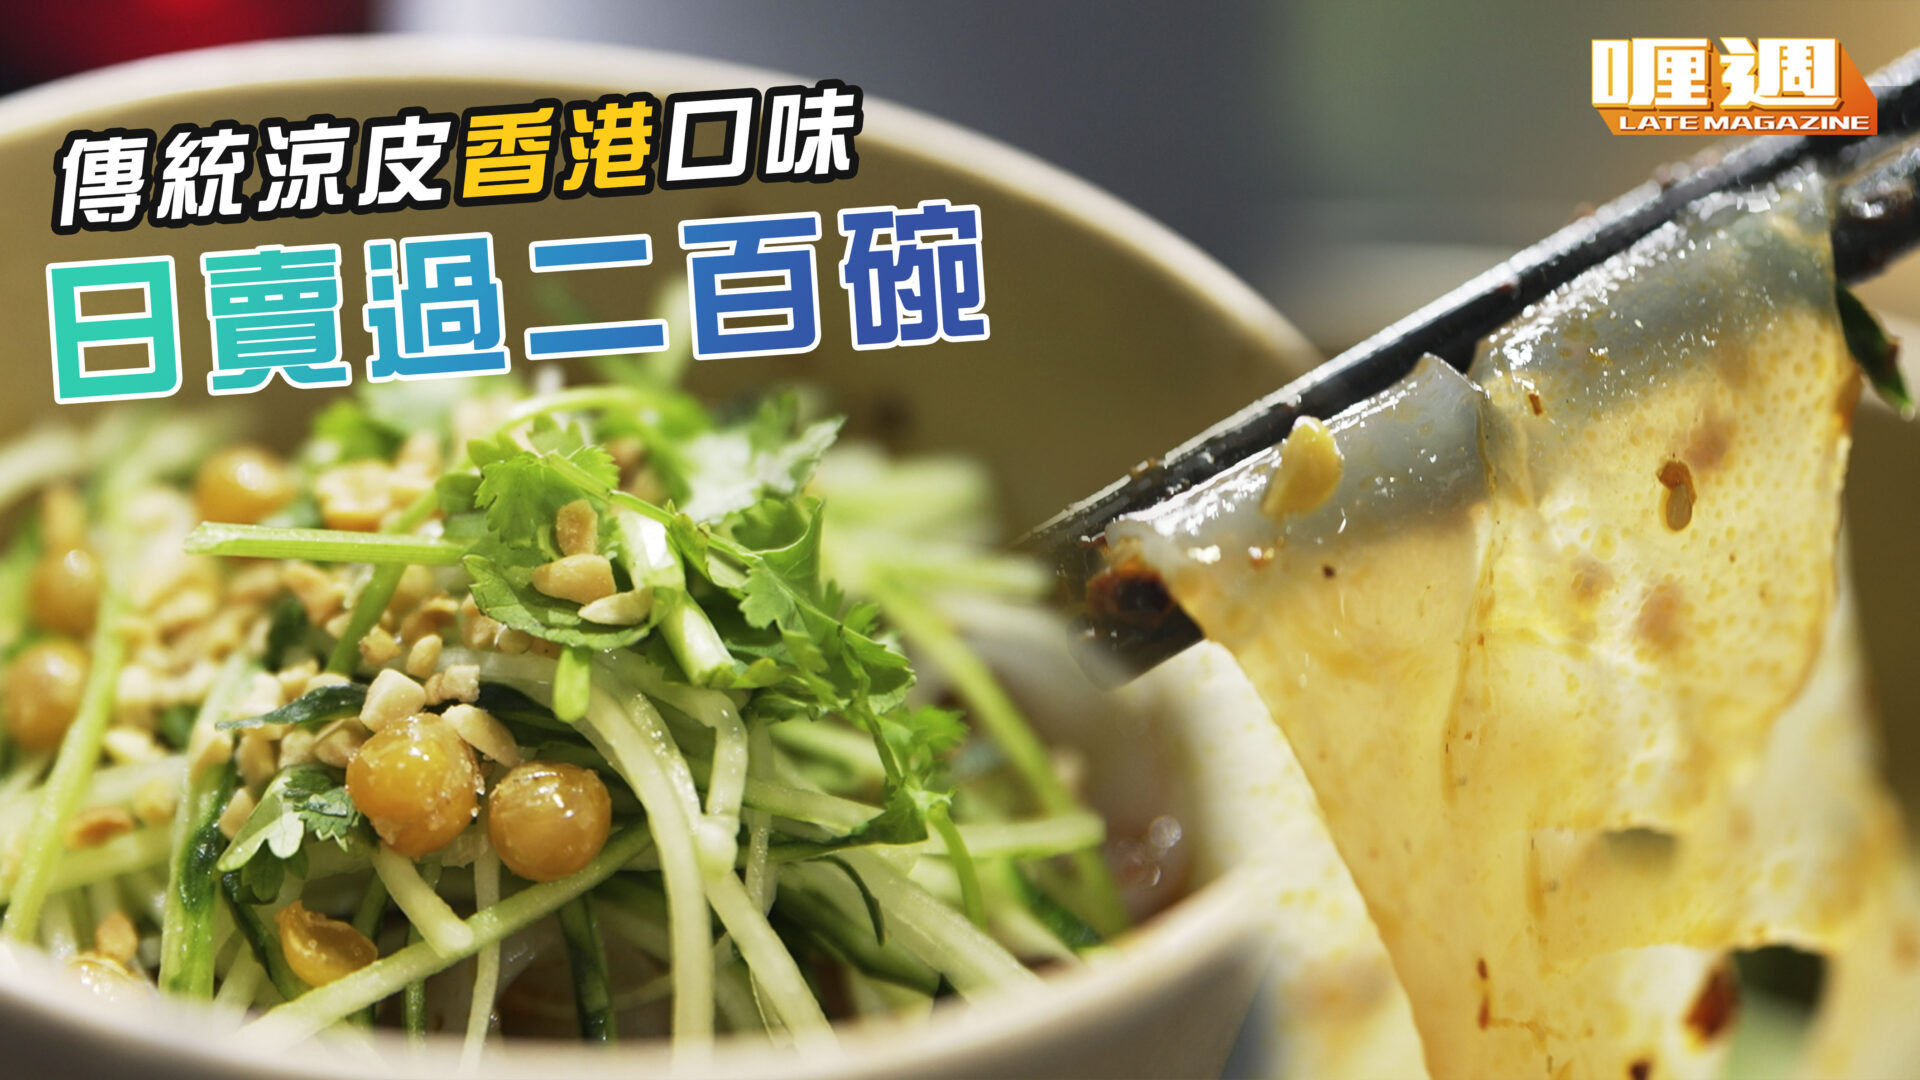 傳統涼皮香港口味 日賣過二百碗